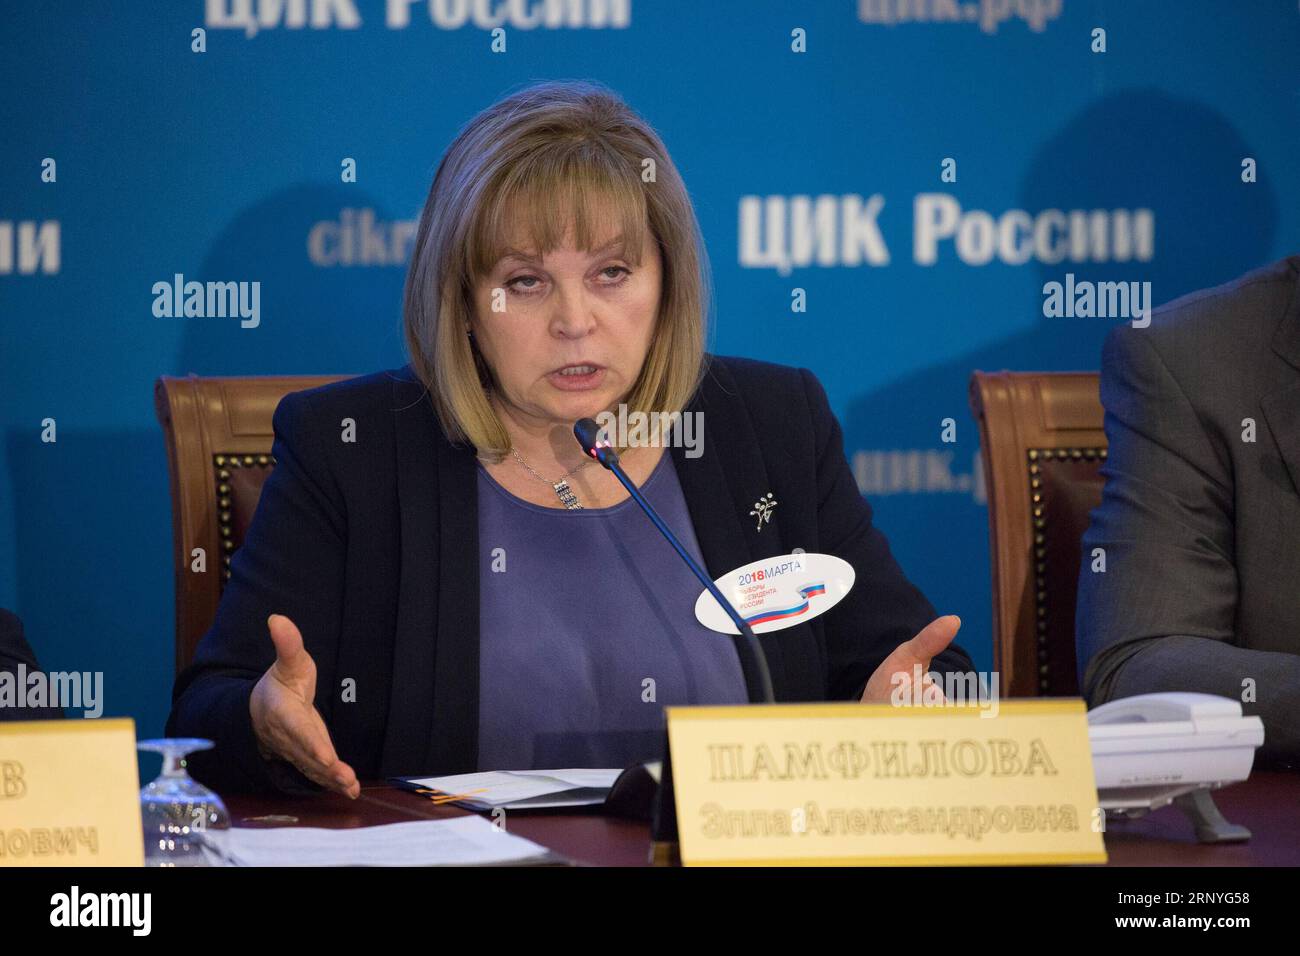 (180318) -- MOSCOU, le 18 mars 2018 -- Ella Pamfilova, chef de la Commission électorale centrale russe (CEC), prend la parole lors d'une conférence de presse à Moscou, en Russie, le 18 mars 2018. Le président russe Vladimir Poutine a remporté 71,97 pour cent des voix à l'élection présidentielle russe après 21,33 pour cent des bulletins comptés, selon le sondage de sortie de dimanche. RUSSIE-MOSCOU-ÉLECTION PRÉSIDENTIELLE-CONFÉRENCE DE PRESSE BAIXXUEQI PUBLICATIONXNOTXINXCHN Banque D'Images